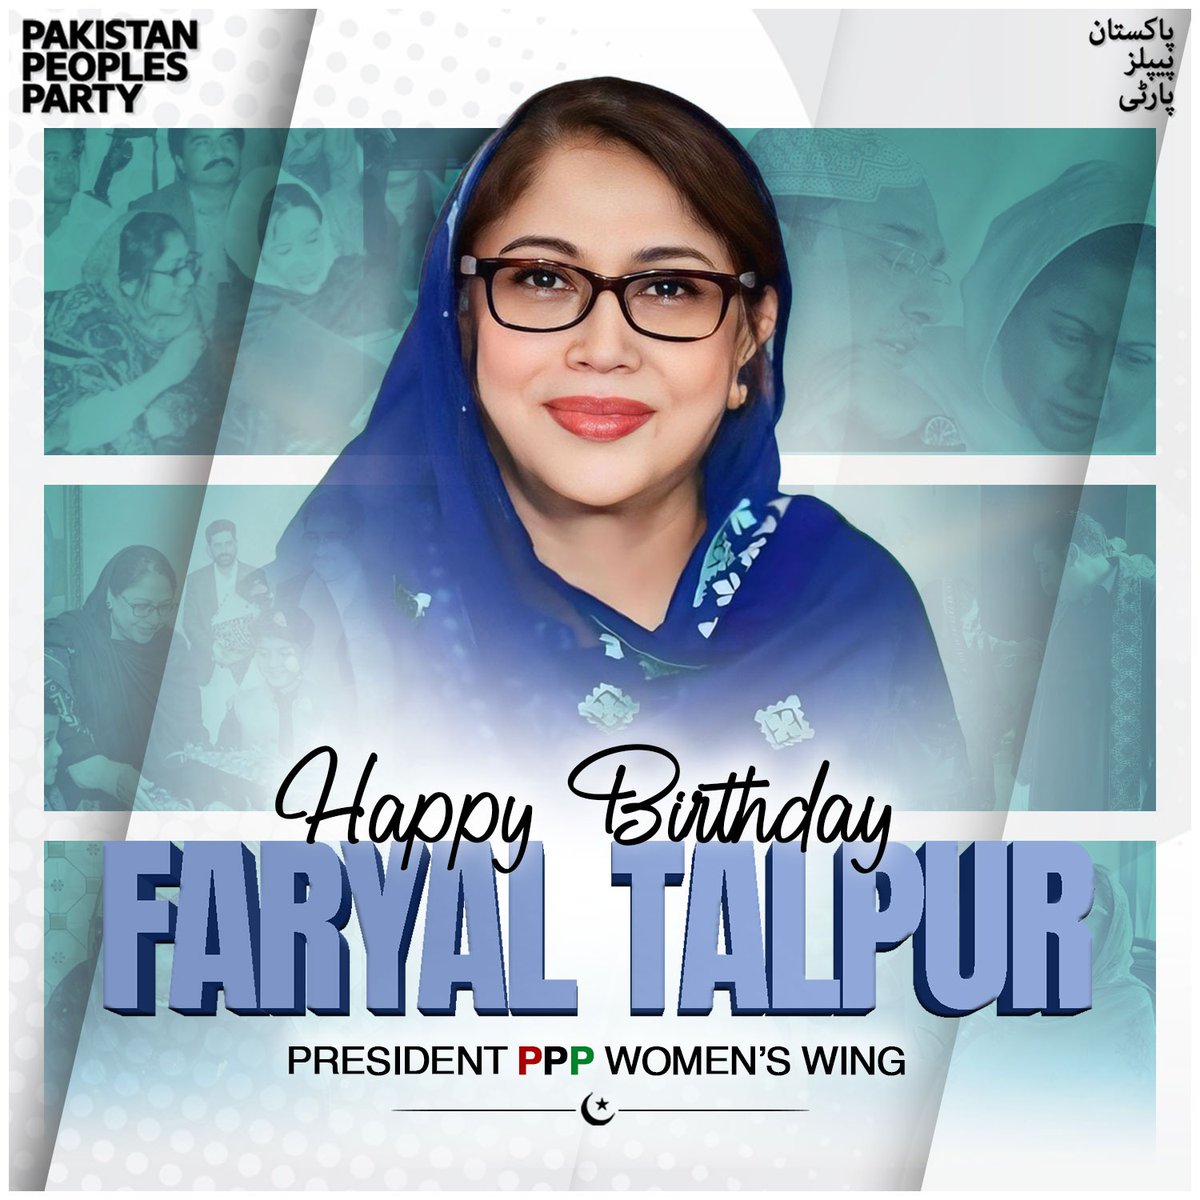 پاکستان پیپلز پارٹی شعبہ خواتین کی مرکزی صدر فریال تالپور صاحبہ کو 66 ویں سالگرہ کے موقع پر مبارکباد پیش کرتی ہے۔ @FaryalTalpurPk #pppdigitalksk